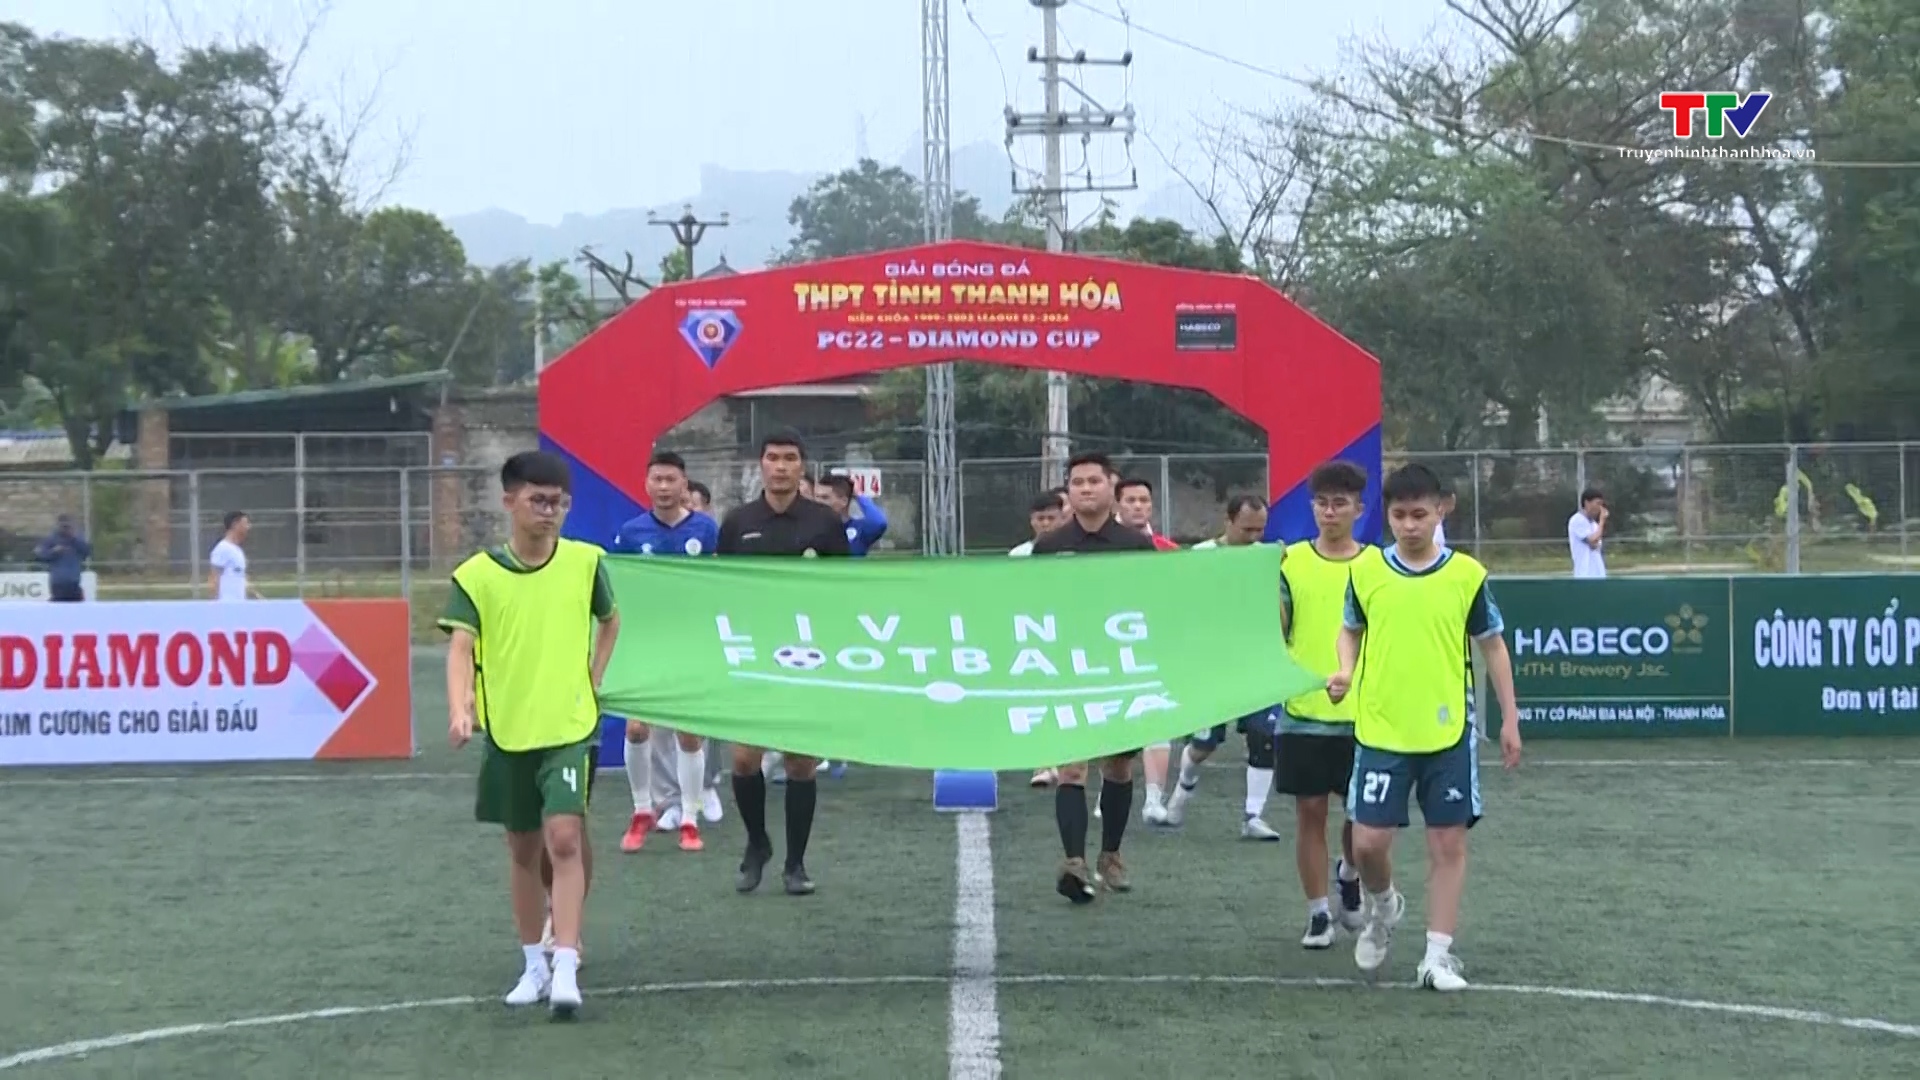 Khai mạc Giải bóng đá trung học phổ thông Thanh Hóa, niên khóa 1999-2002 - Ảnh 1.